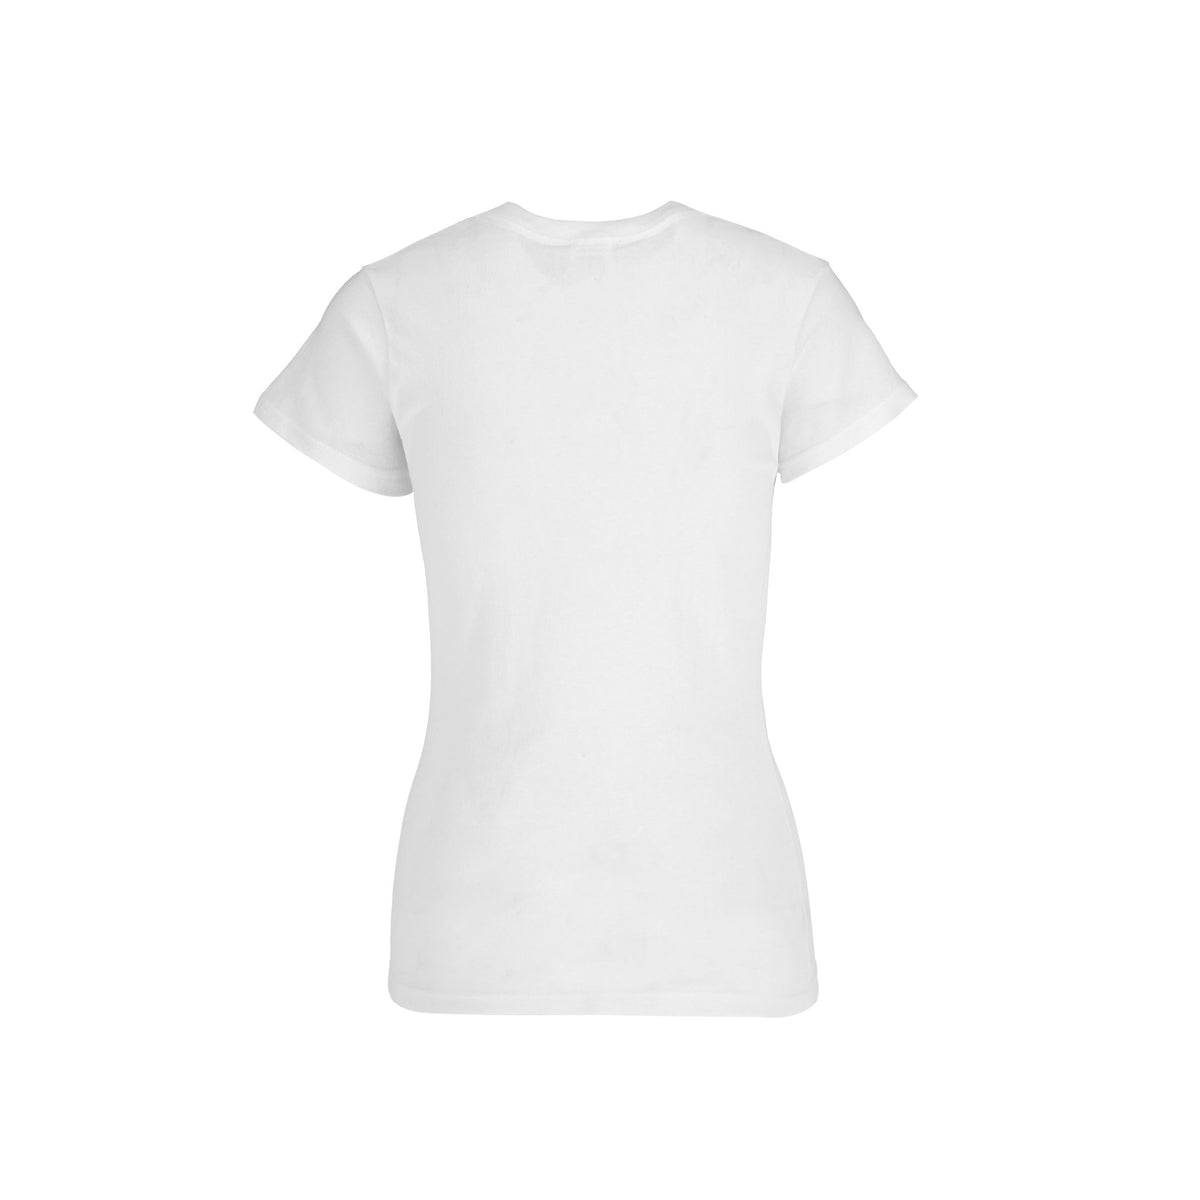 Women’s V-Neck Short Sleeve Silhouette T-Shirt (White) – Yazbek USA Mint